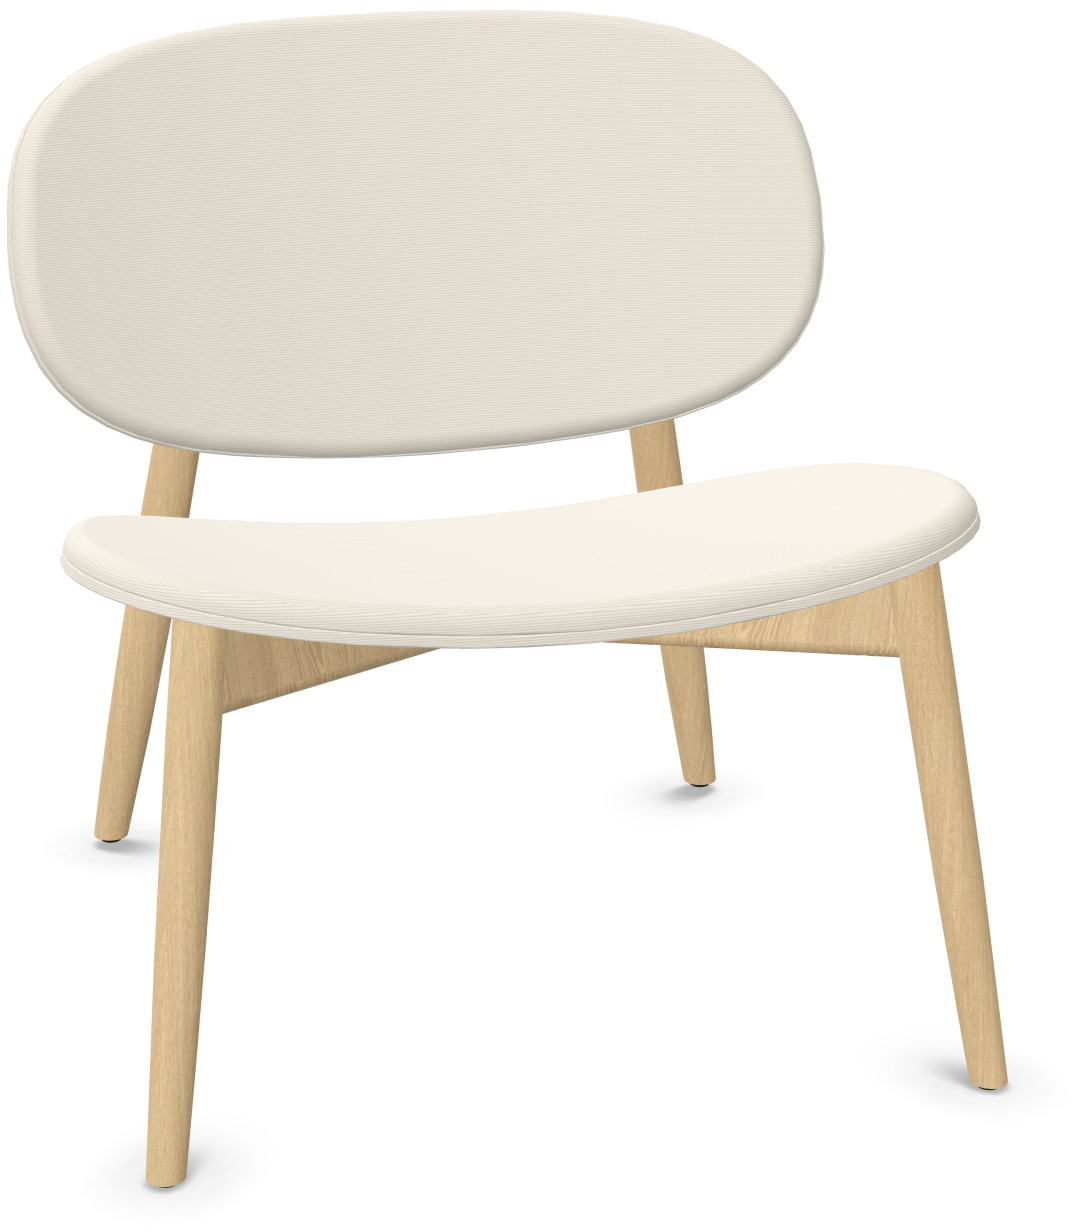 HARMO Relaxsessel in Weiss präsentiert im Onlineshop von KAQTU Design AG. Sessel ist von Infiniti Design